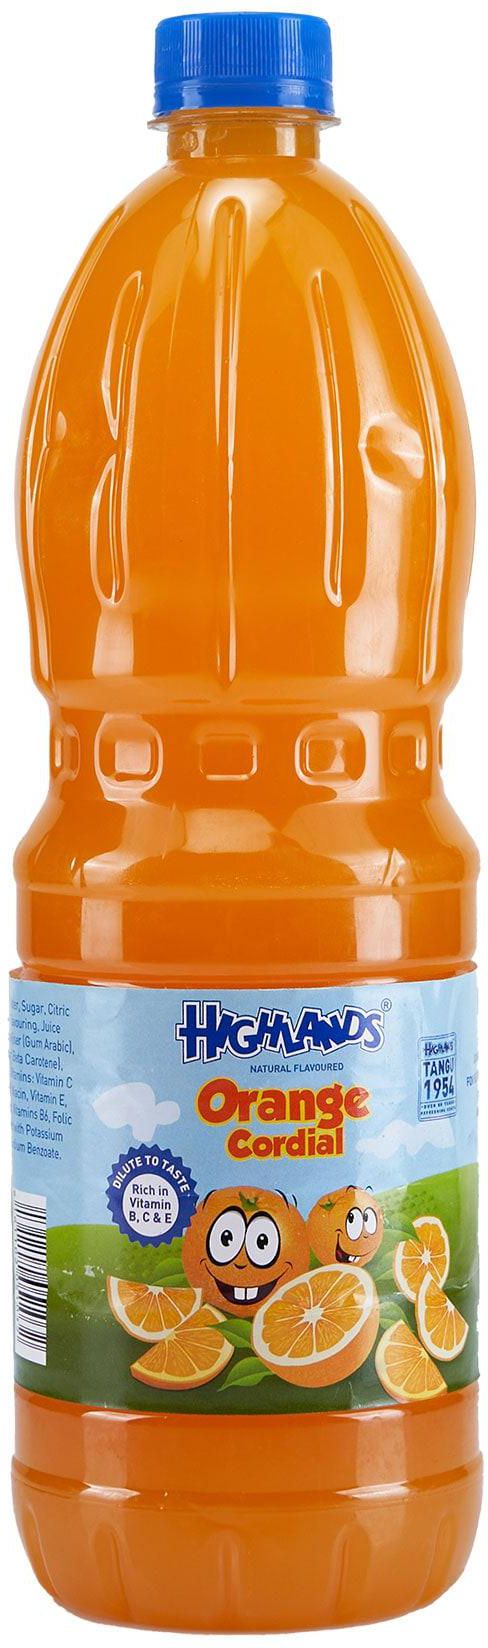 Highlands Cordial Orange Juice 1L